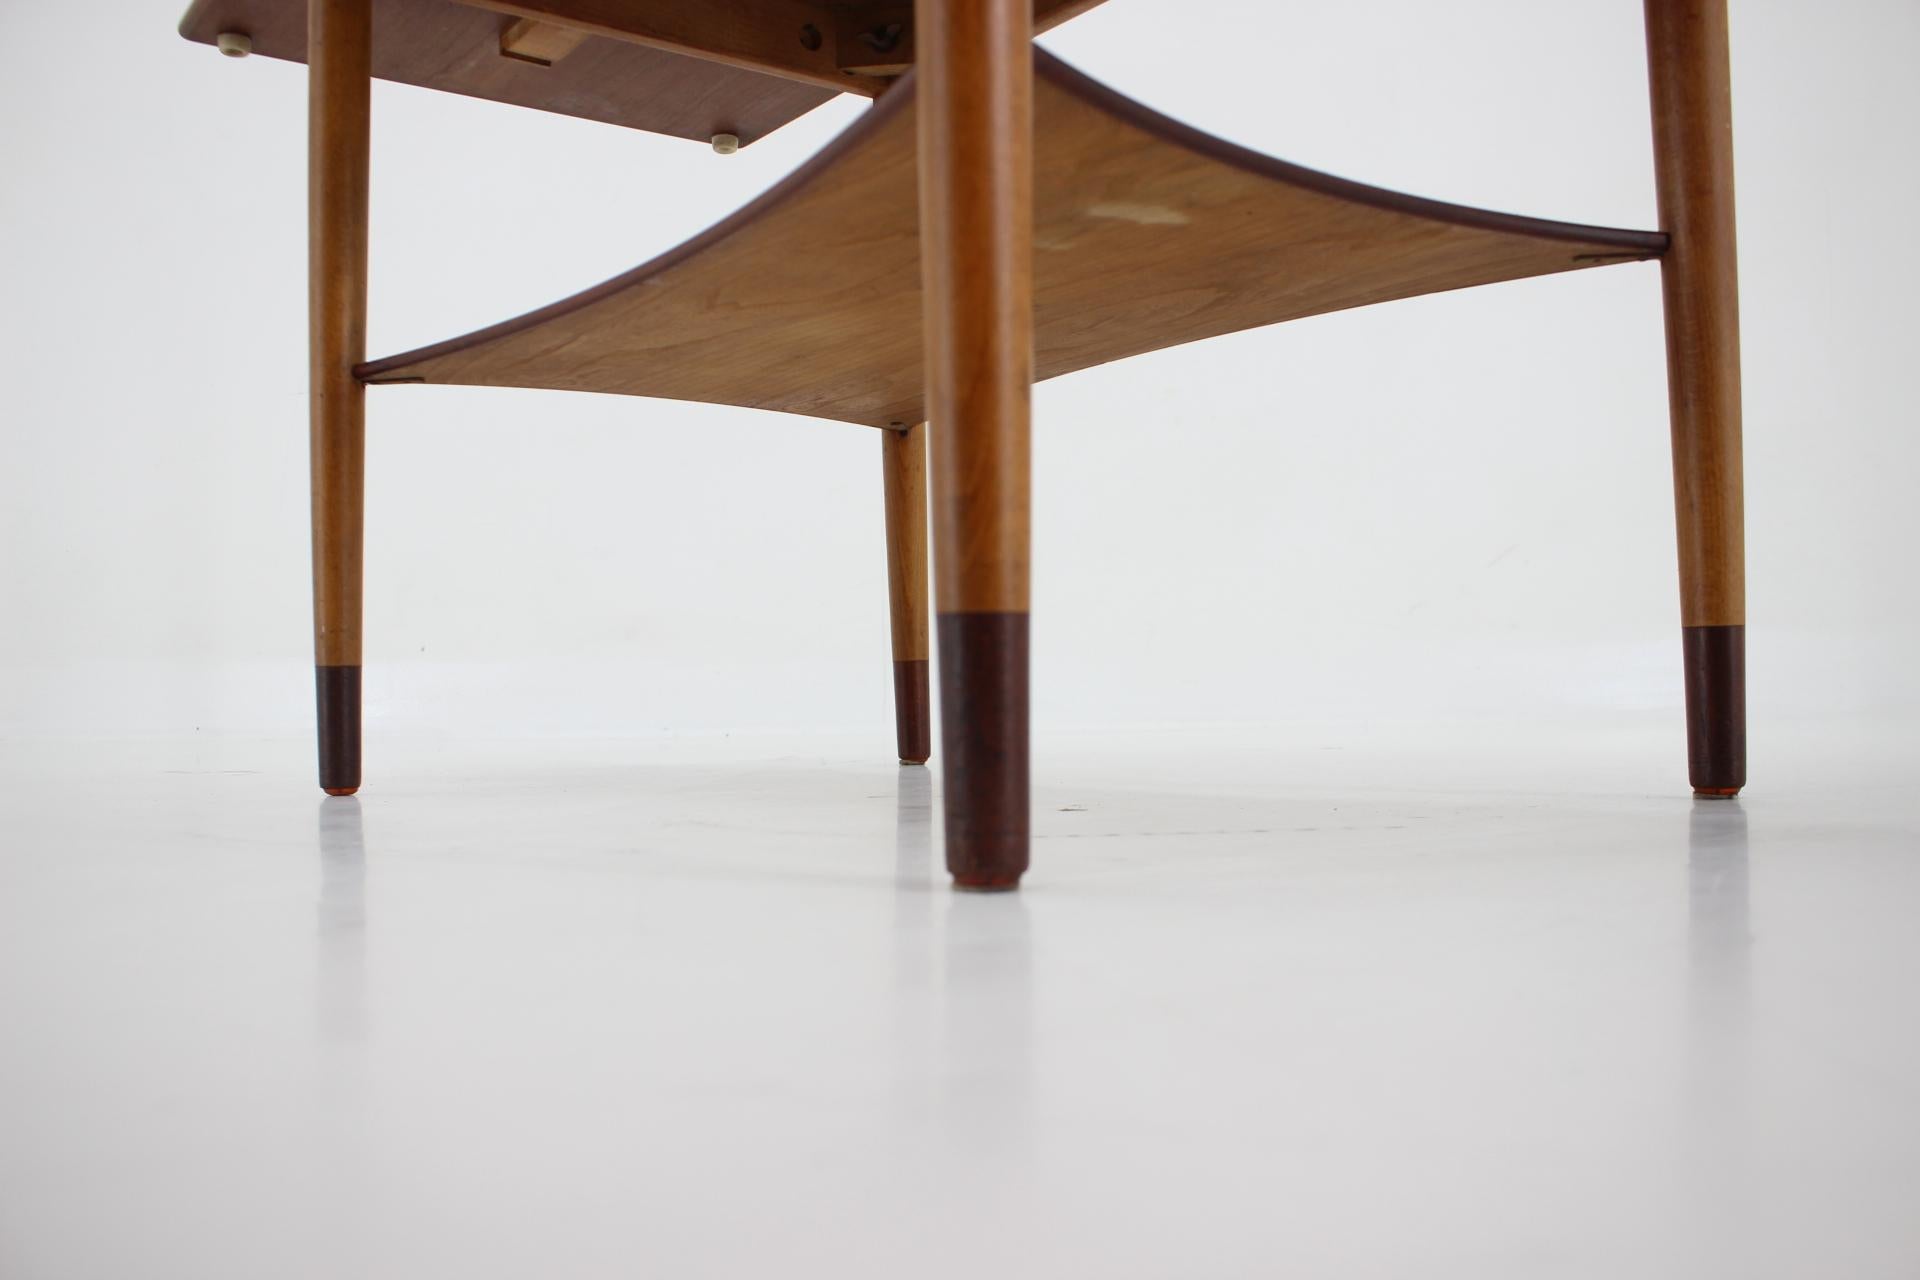 1960s Borge Mogensen Teak and Oak Coffee Table for Soborg Mobelfabric, Denmark For Sale 4